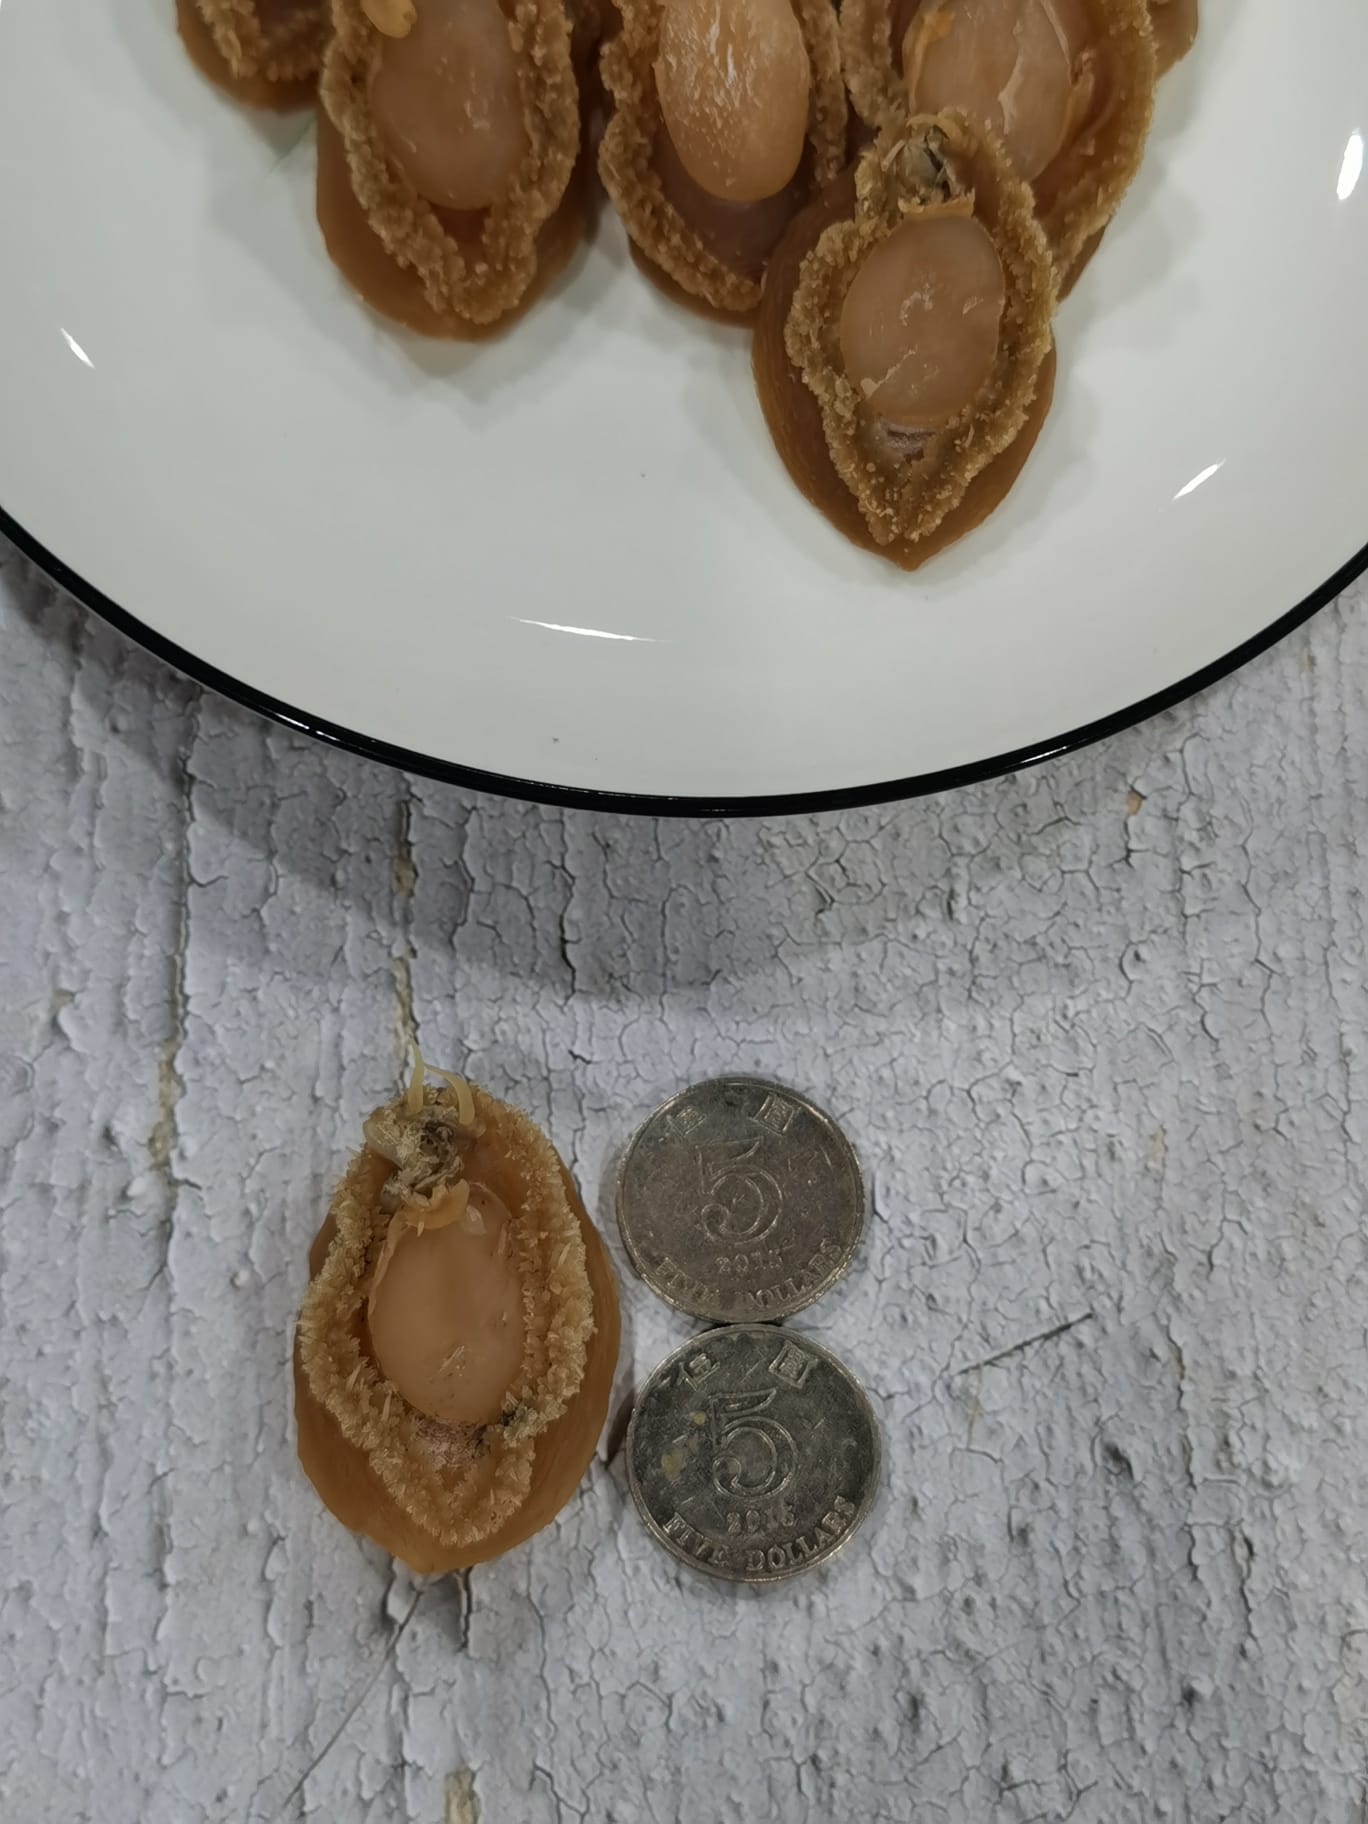 大連乾鮑魚 (36頭) Dried Abalone From Dalian